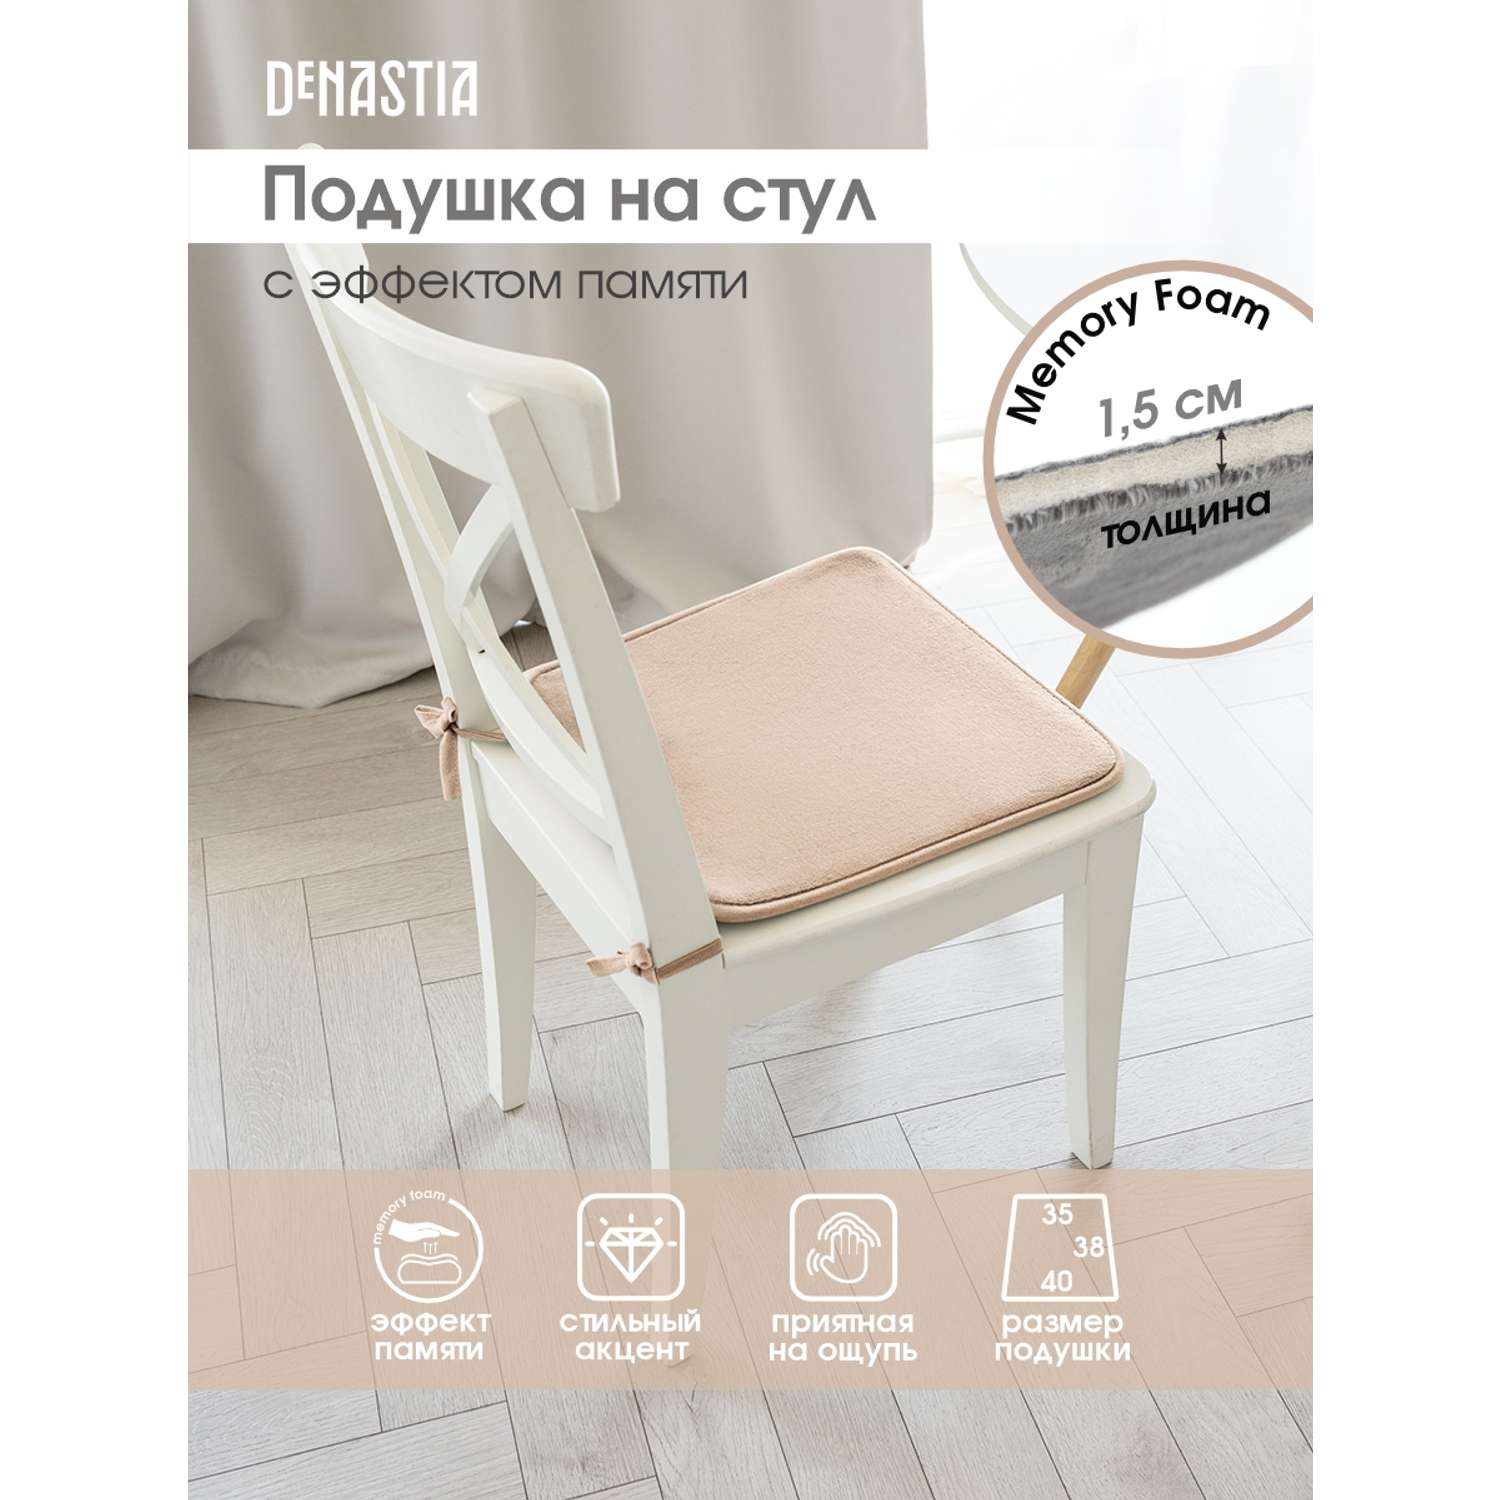 Подушка на стул DeNASTIA с эффектом памяти 40x35x38 см молочный P111120 - фото 2